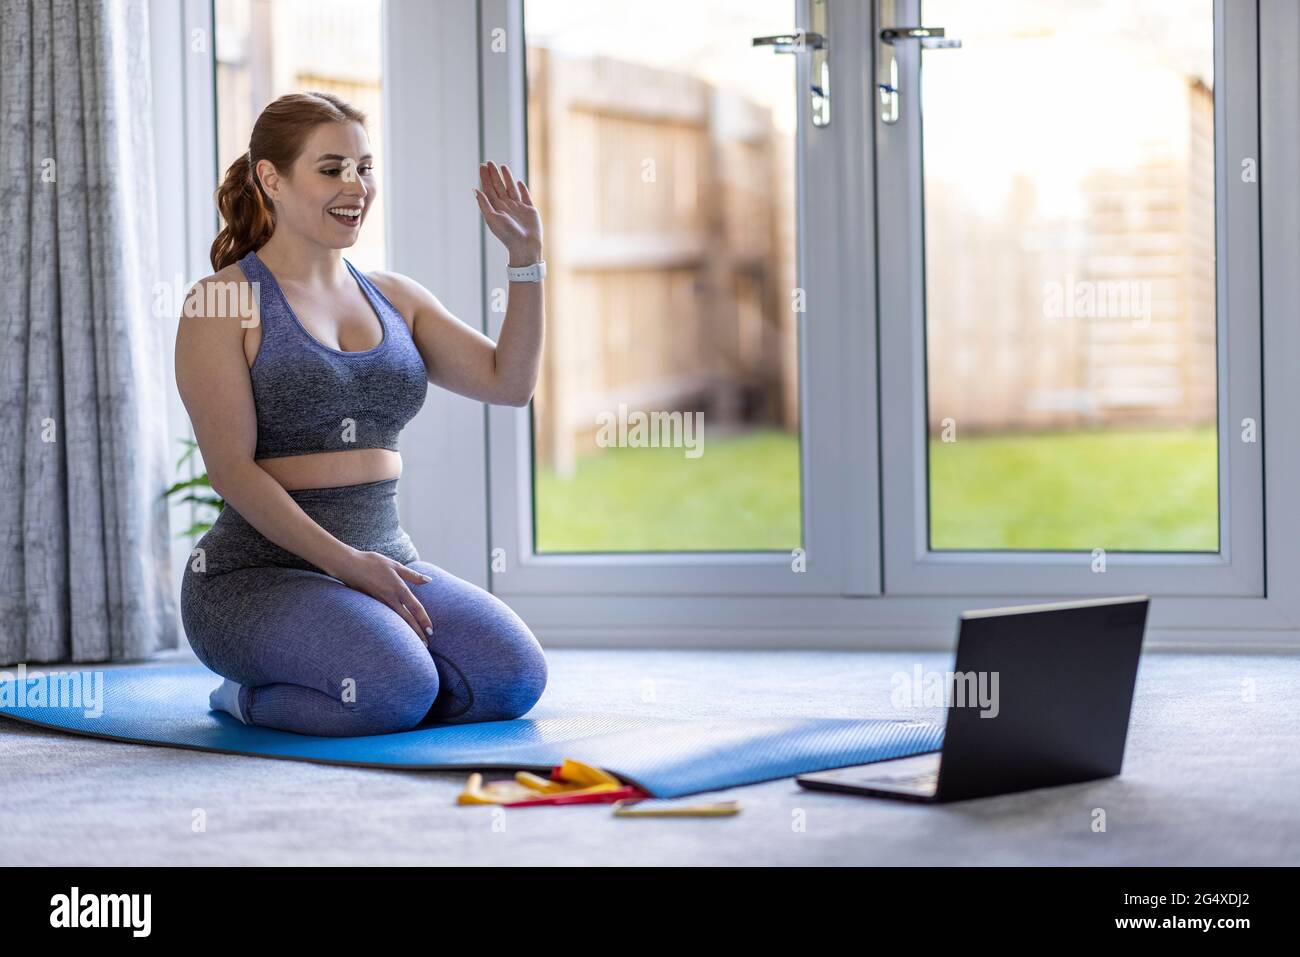 Lächelnde Frau winkt auf dem Laptop, während sie auf der Trainingsmatte sitzt Stockfoto